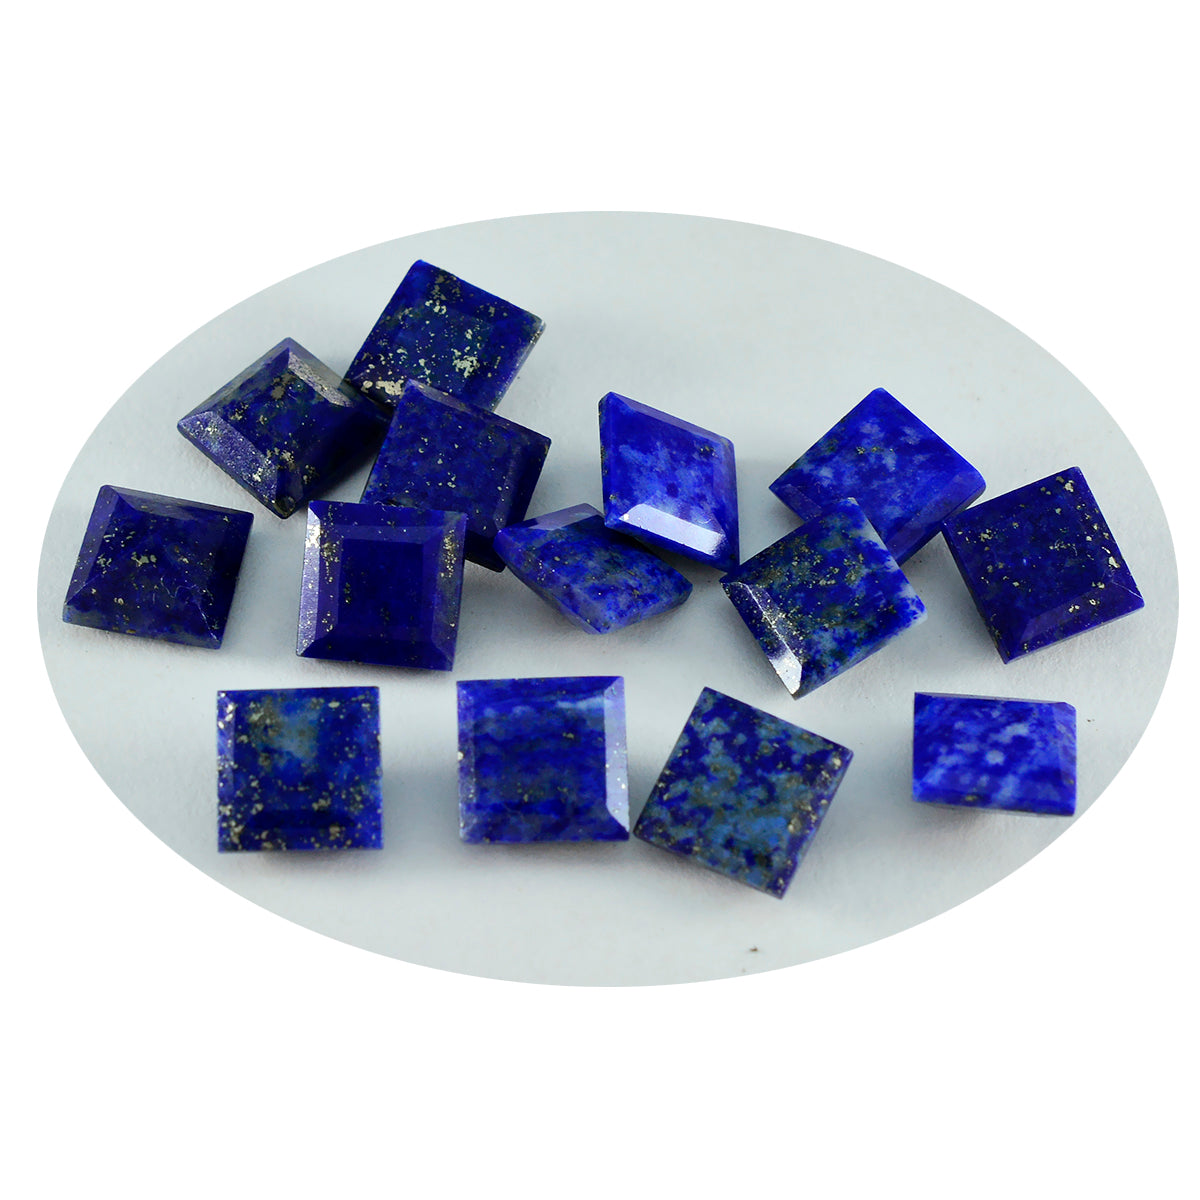 Riyogems 1 pièce de lapis-lazuli bleu véritable à facettes 7x7mm de forme carrée, pierres précieuses d'excellente qualité